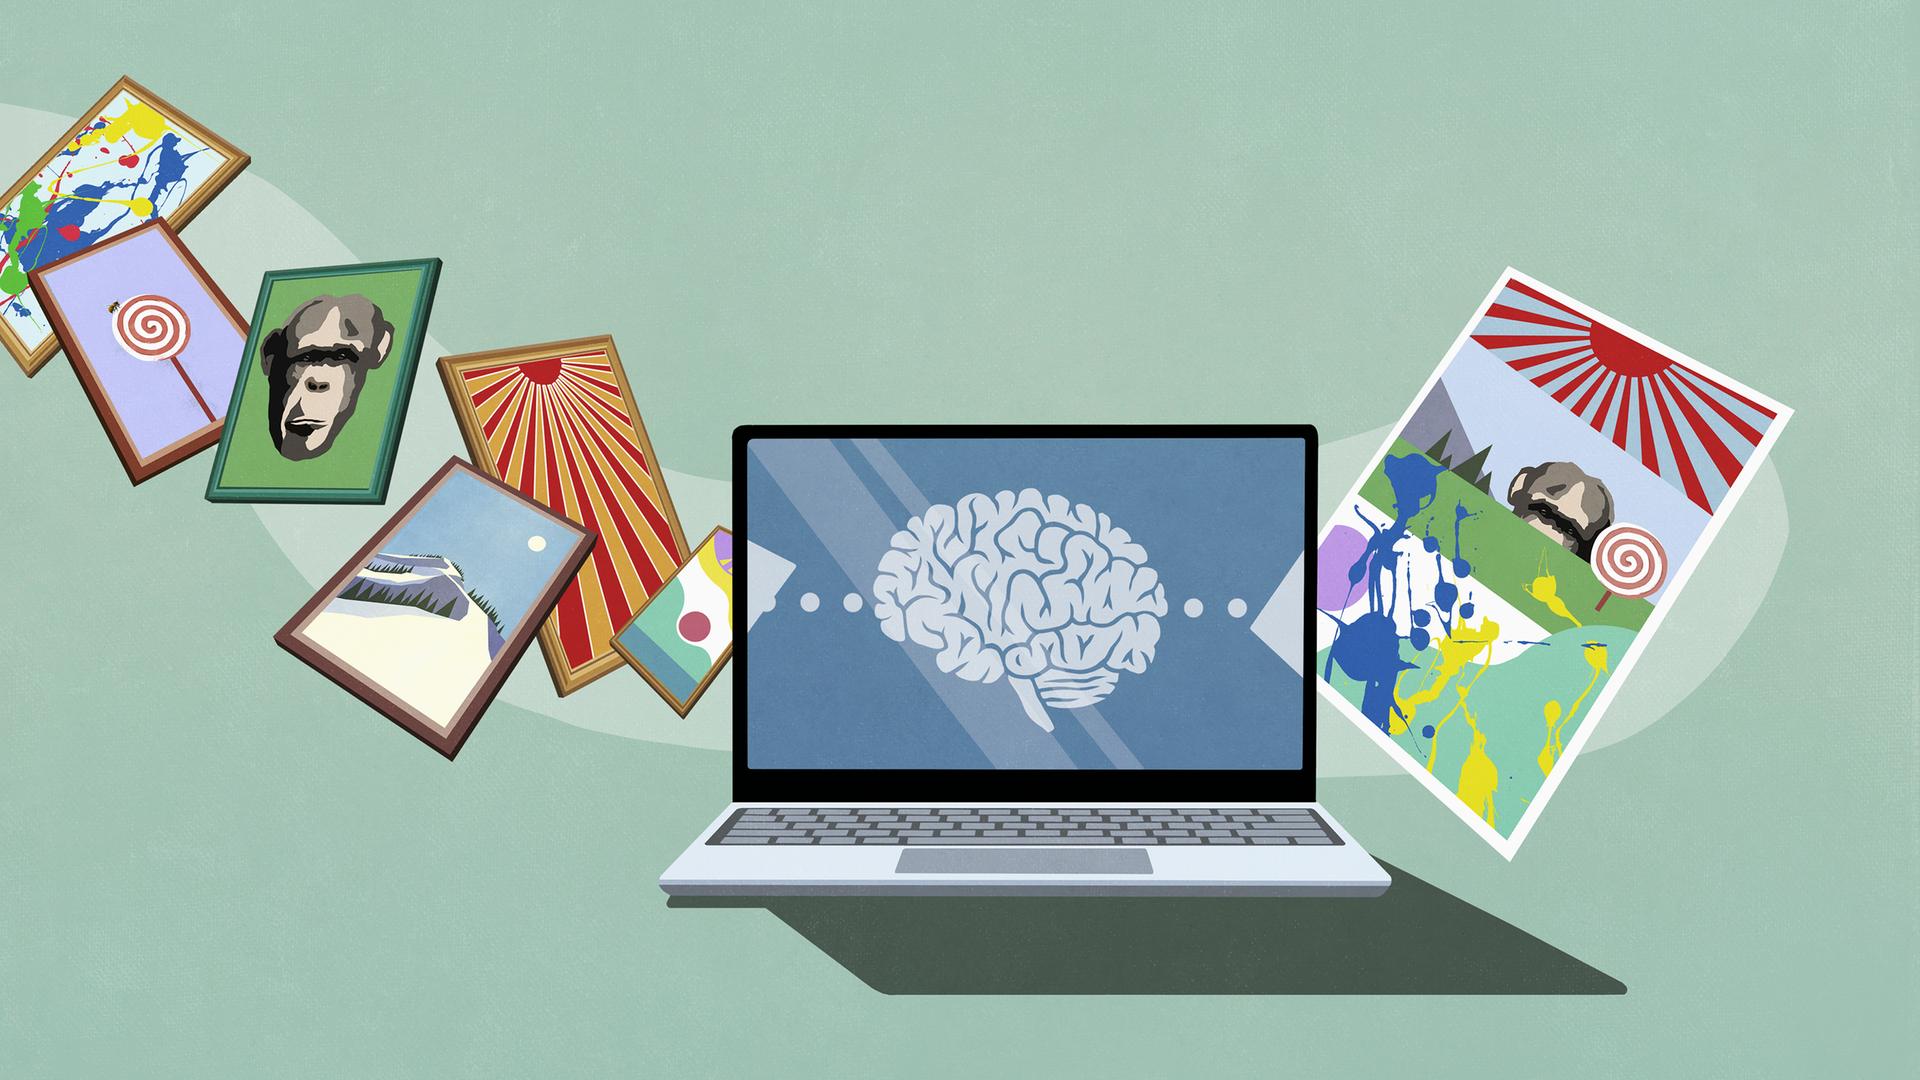 Illustration: Ein Gehirn auf dem Laptop-Bildschirm verarbeitet Bilder, auf der anderen Seite wird eine Bildcollage ausgespuckt.